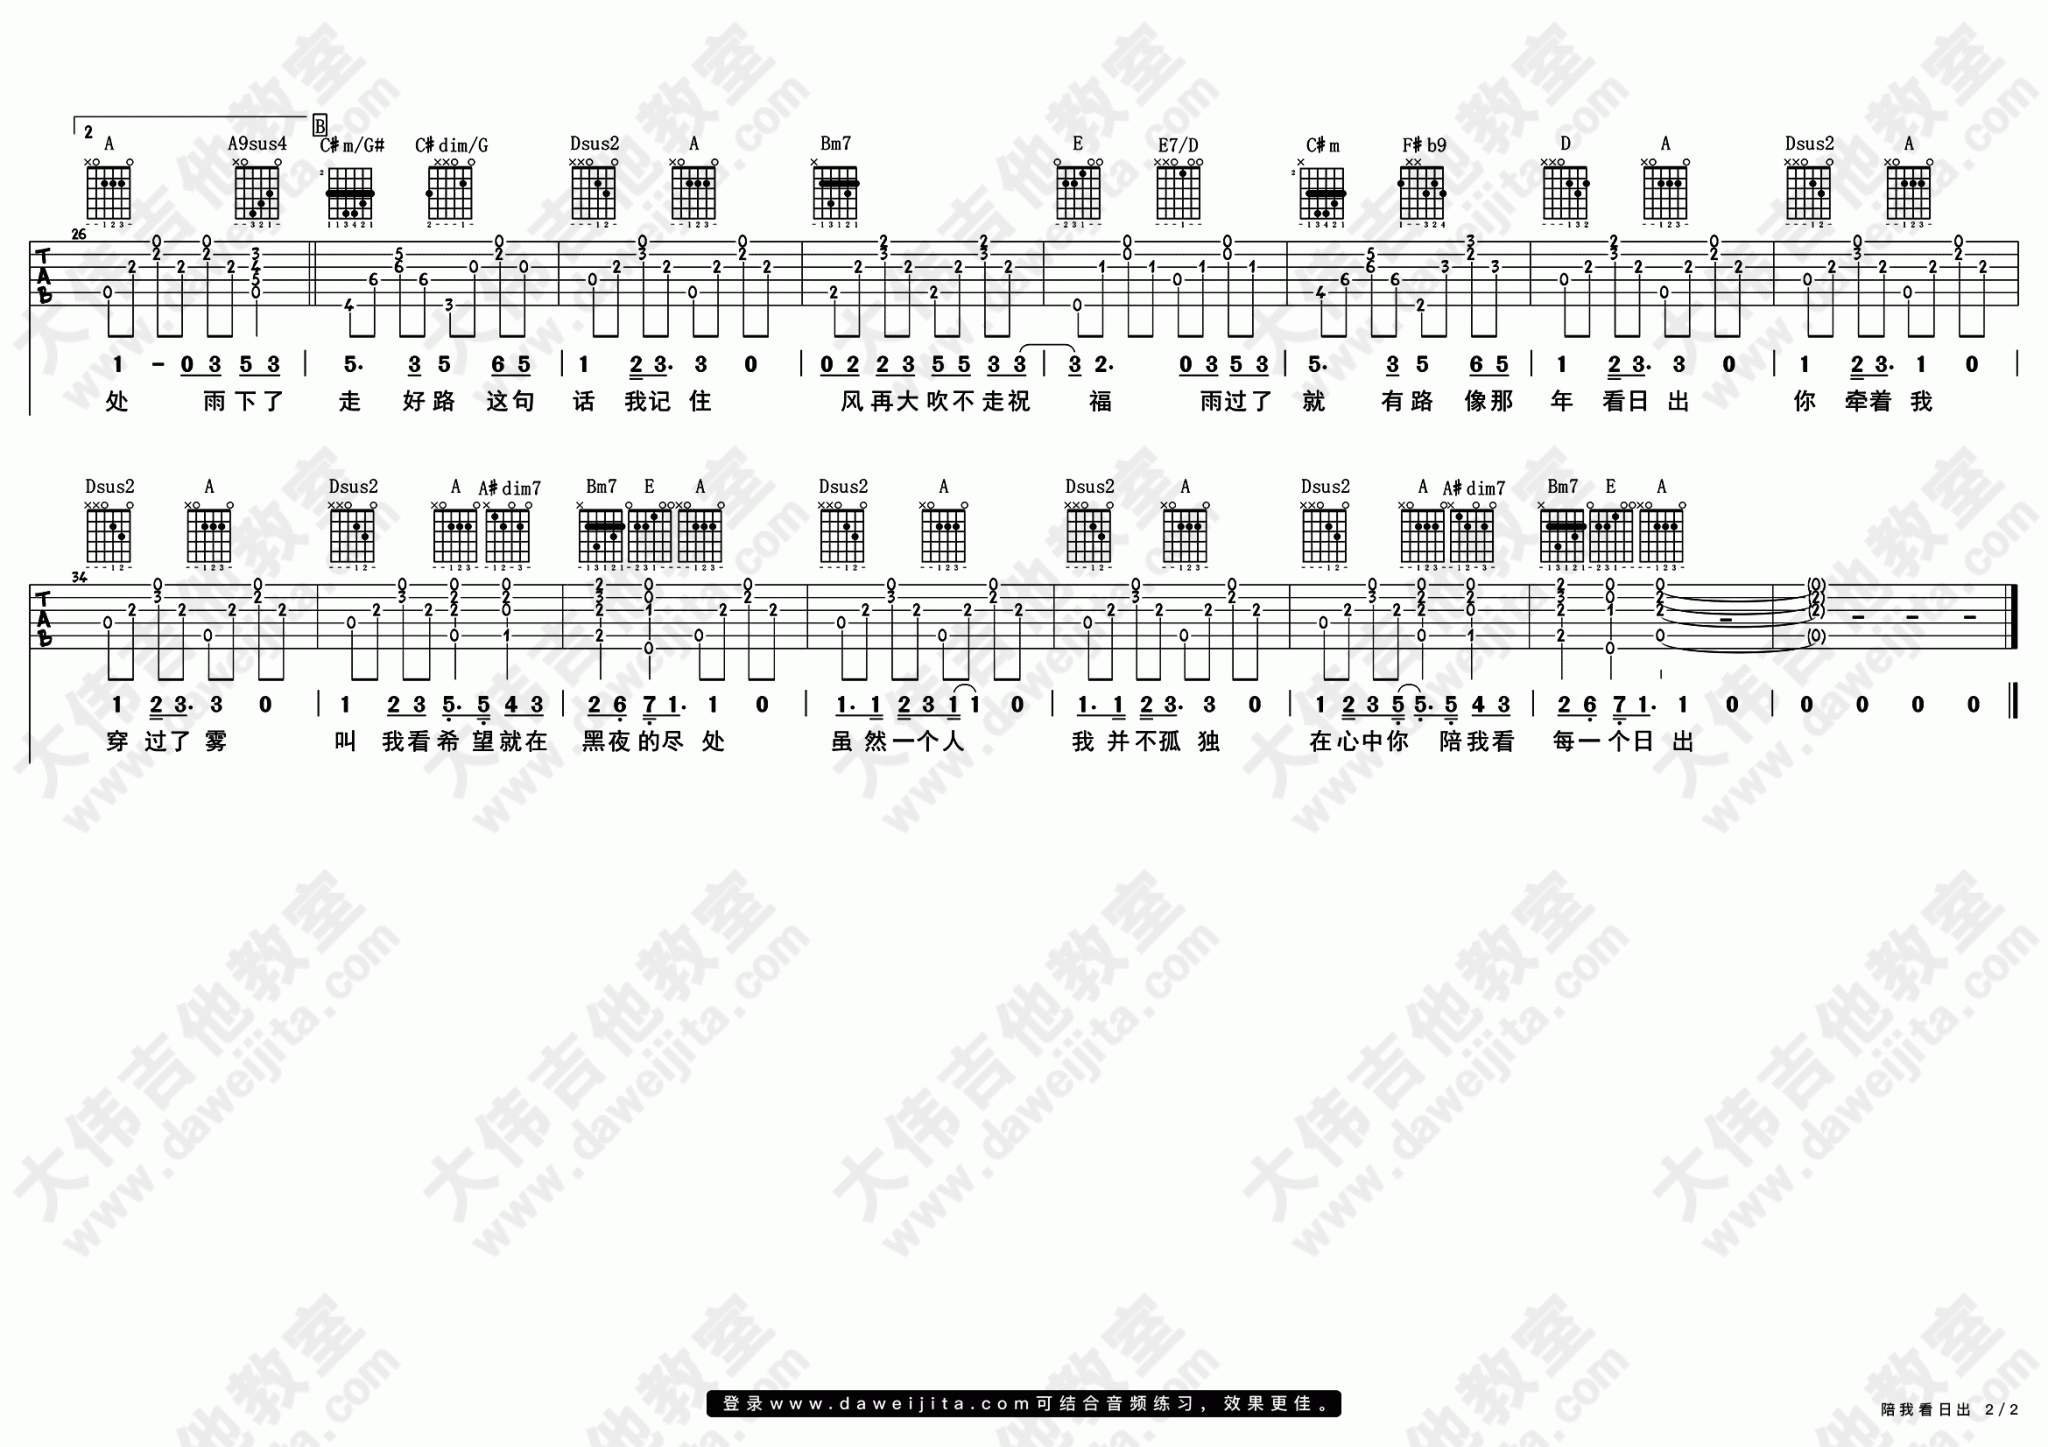 蔡淳佳《陪我看日出》吉他谱(A调)-Guitar Music Score - GTP吉他谱